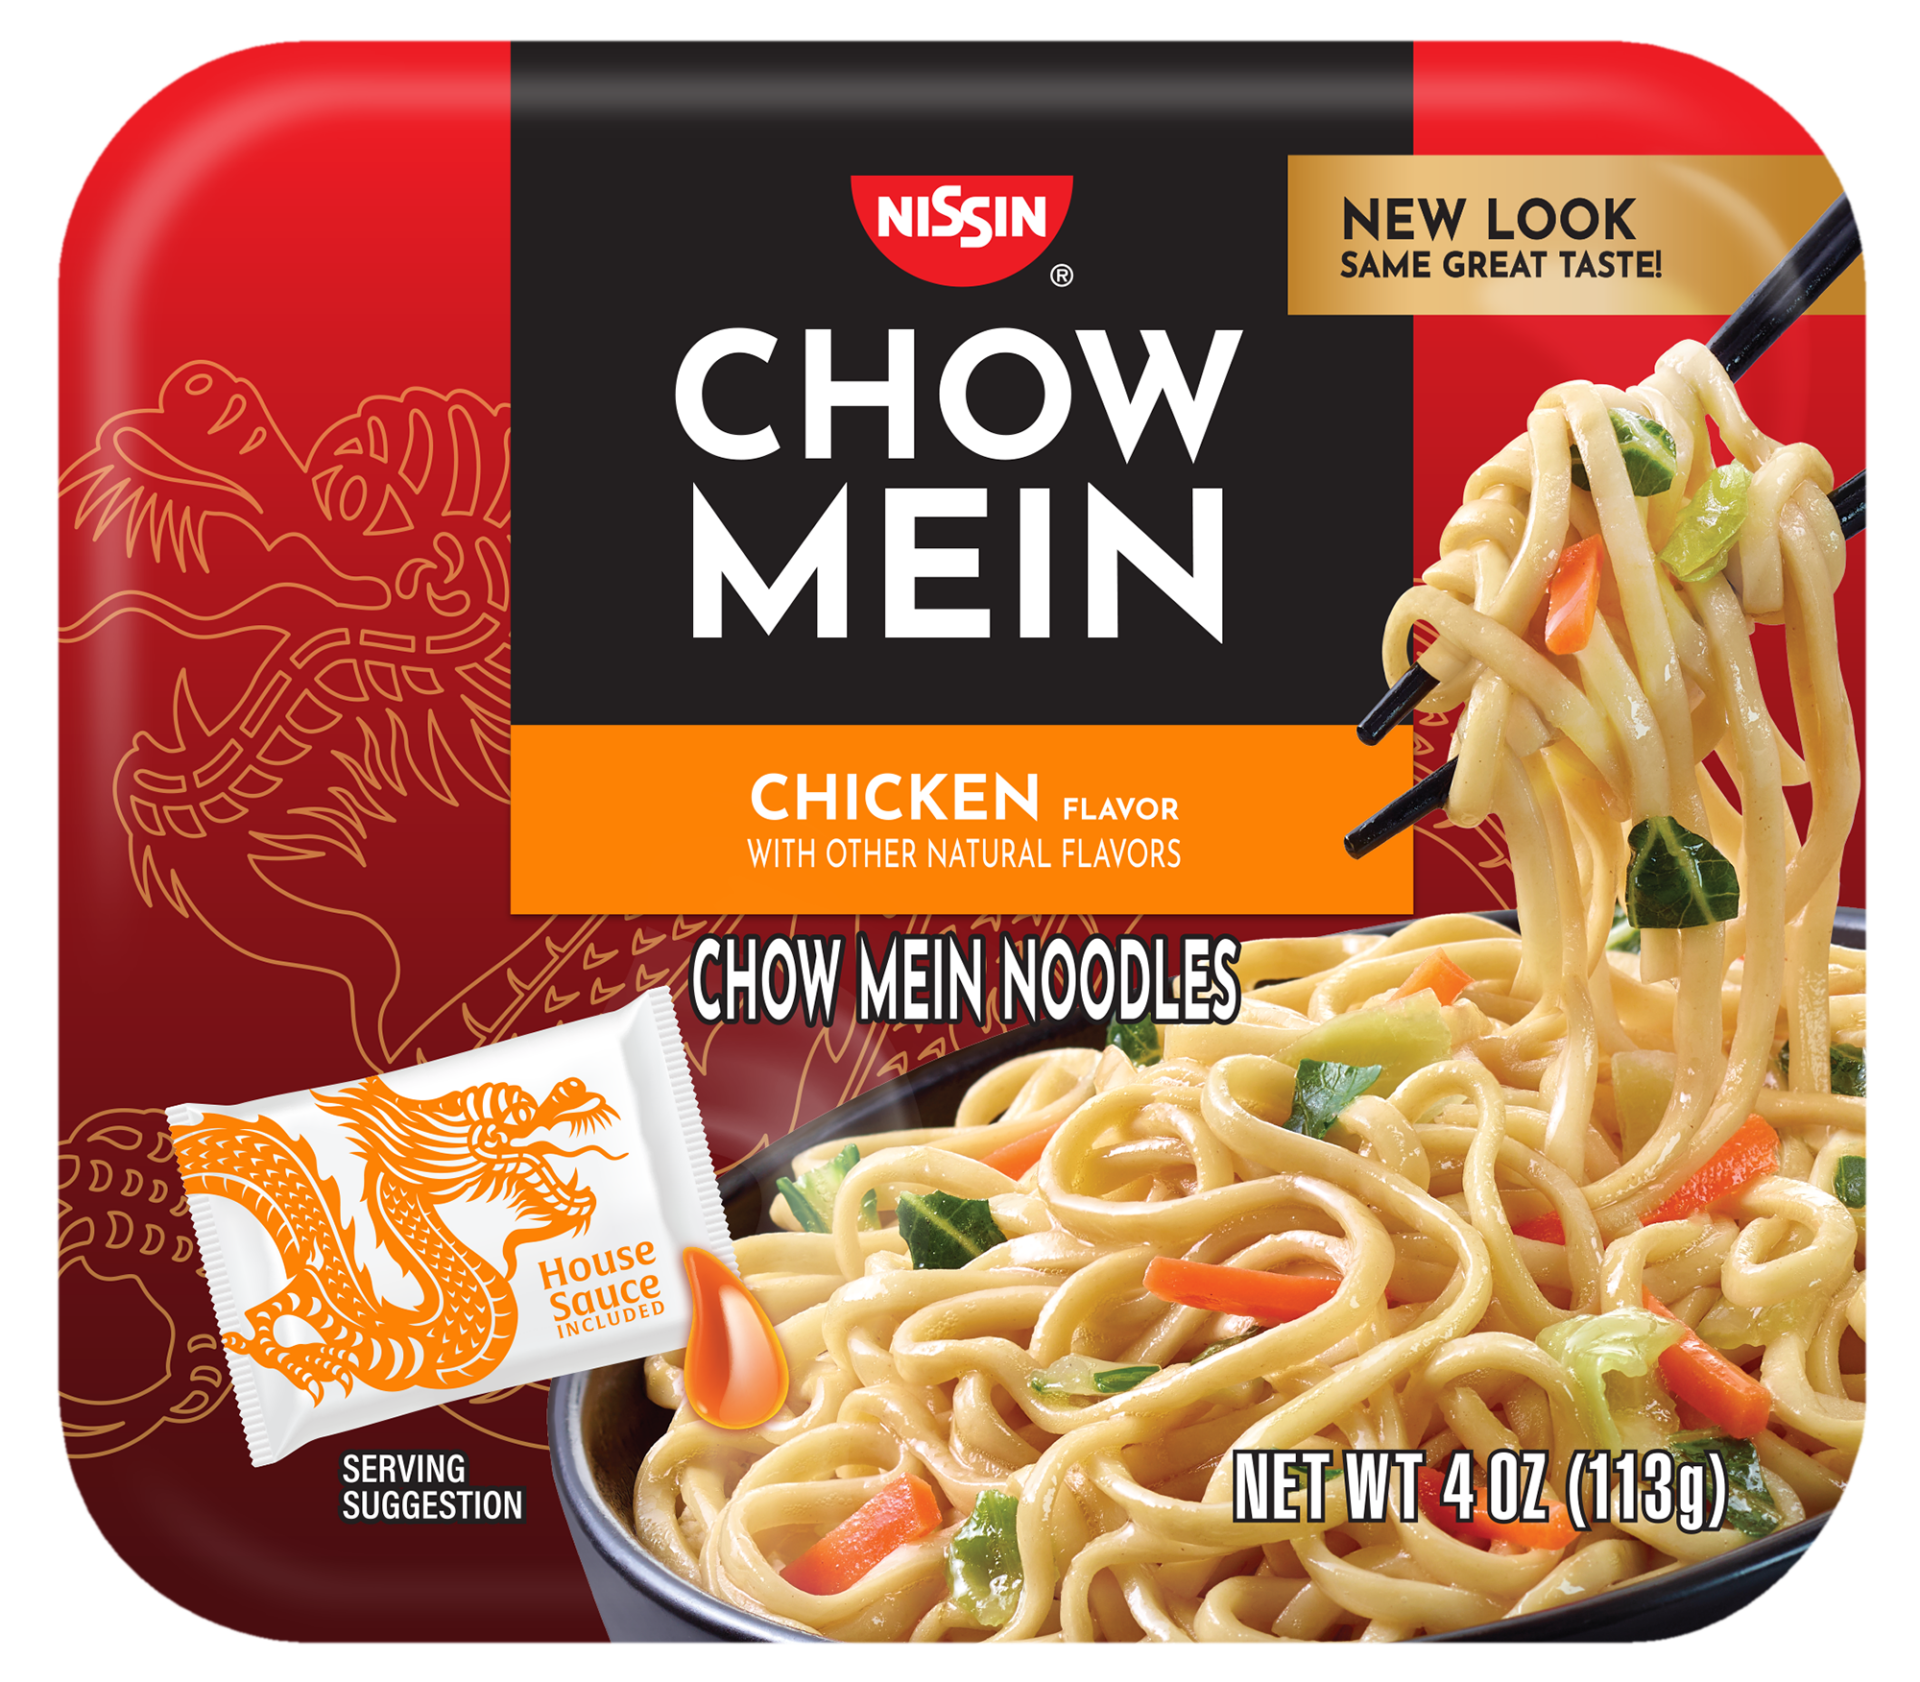 Chow Mein Chicken